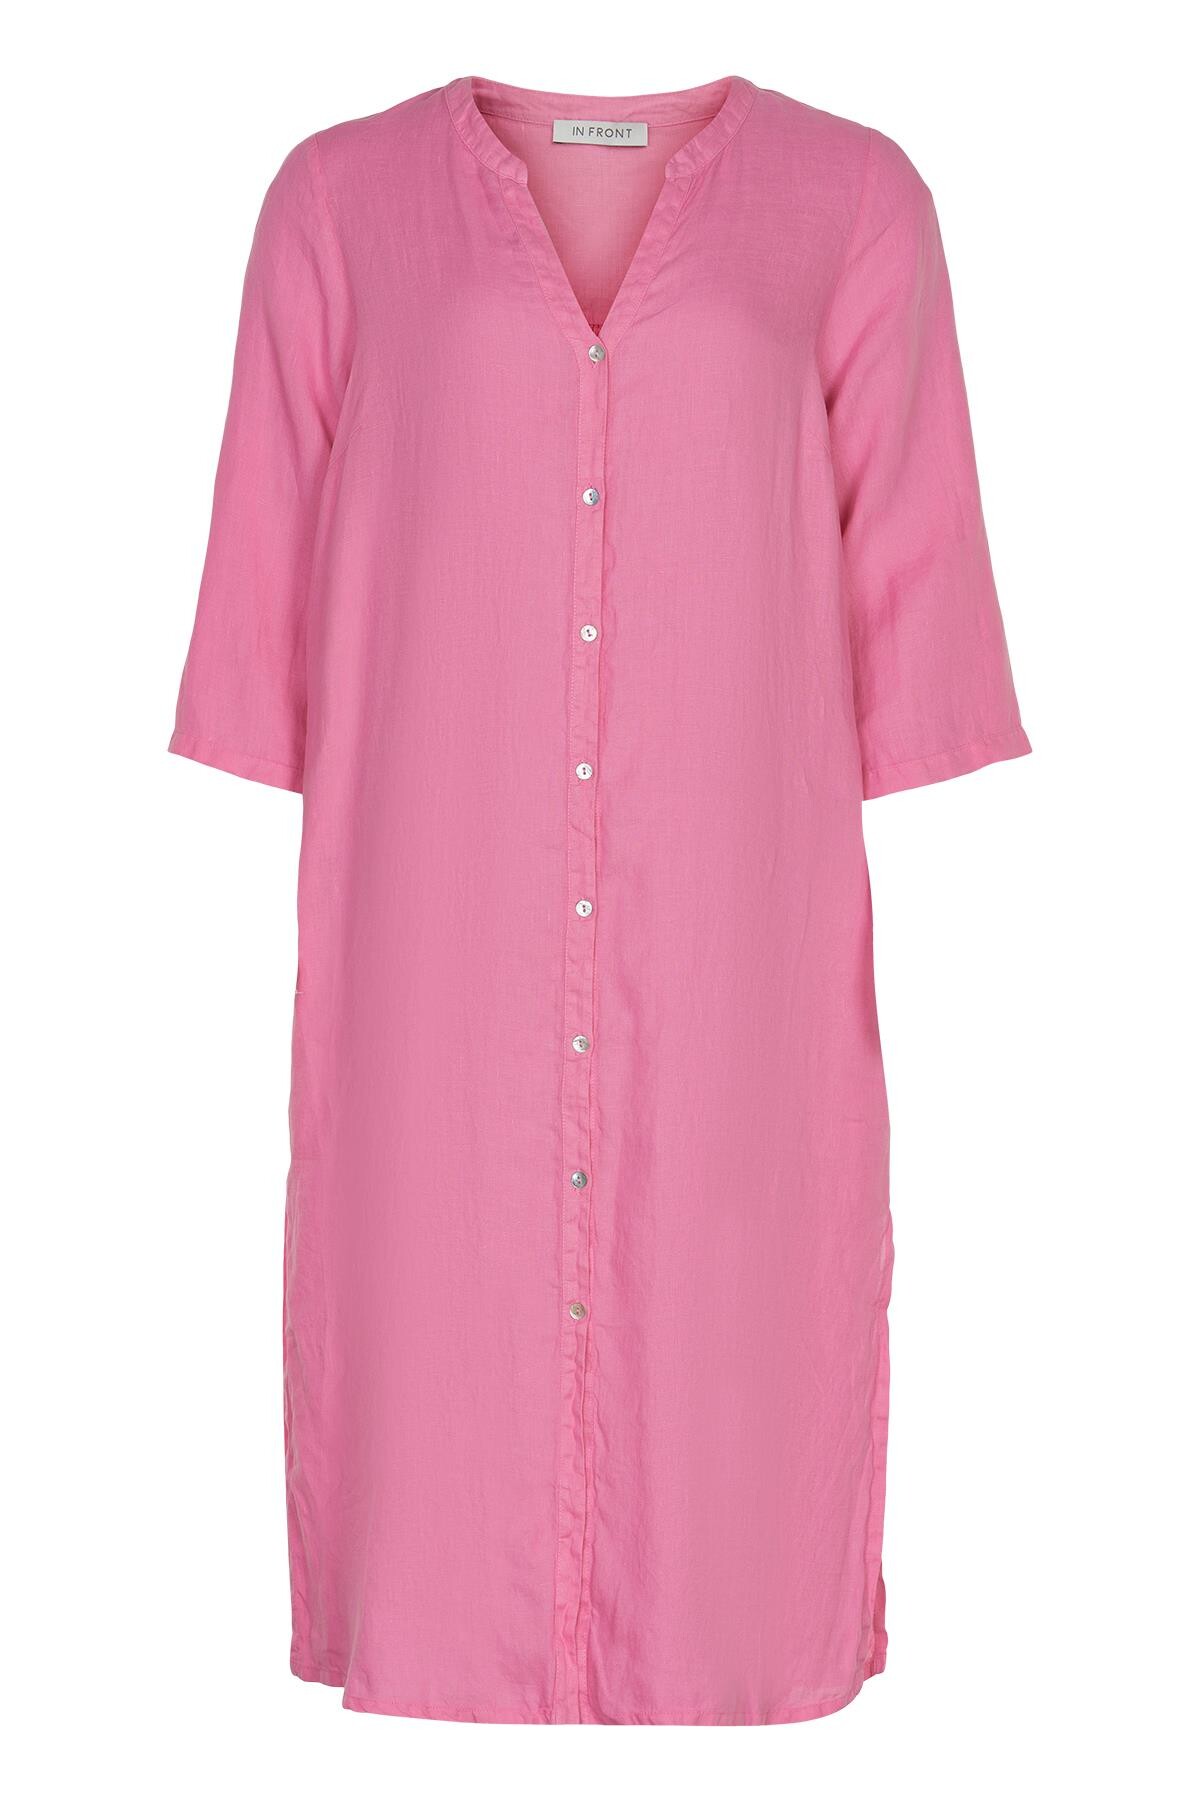 Billede af IN FRONT Lino Lang Skjortekjole, Farve: Pink, Størrelse: M, Dame